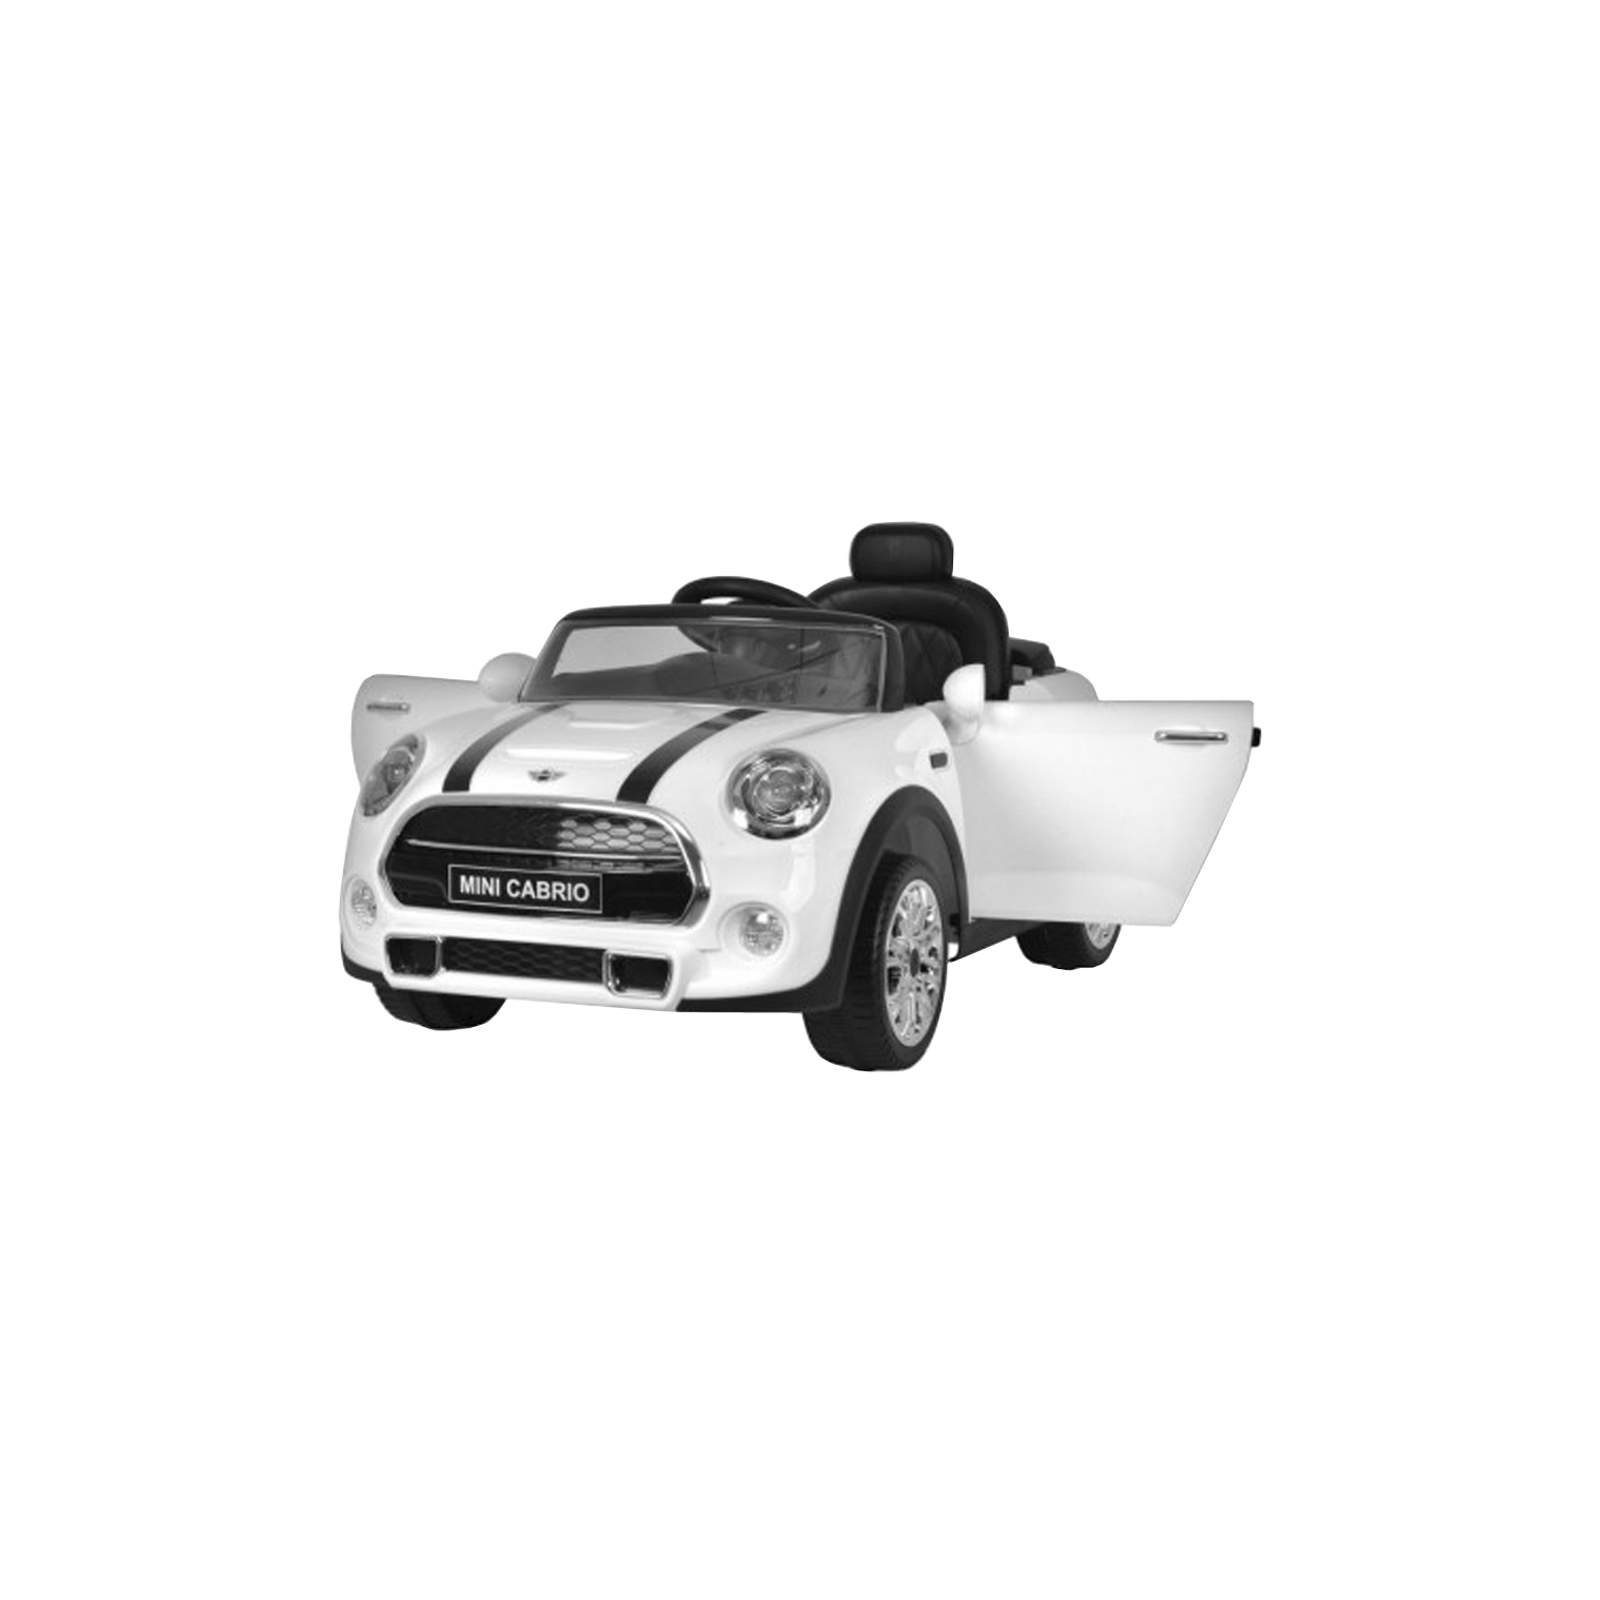 Електромобіль BabyHit Mini Z653R White (71145) зображення 4